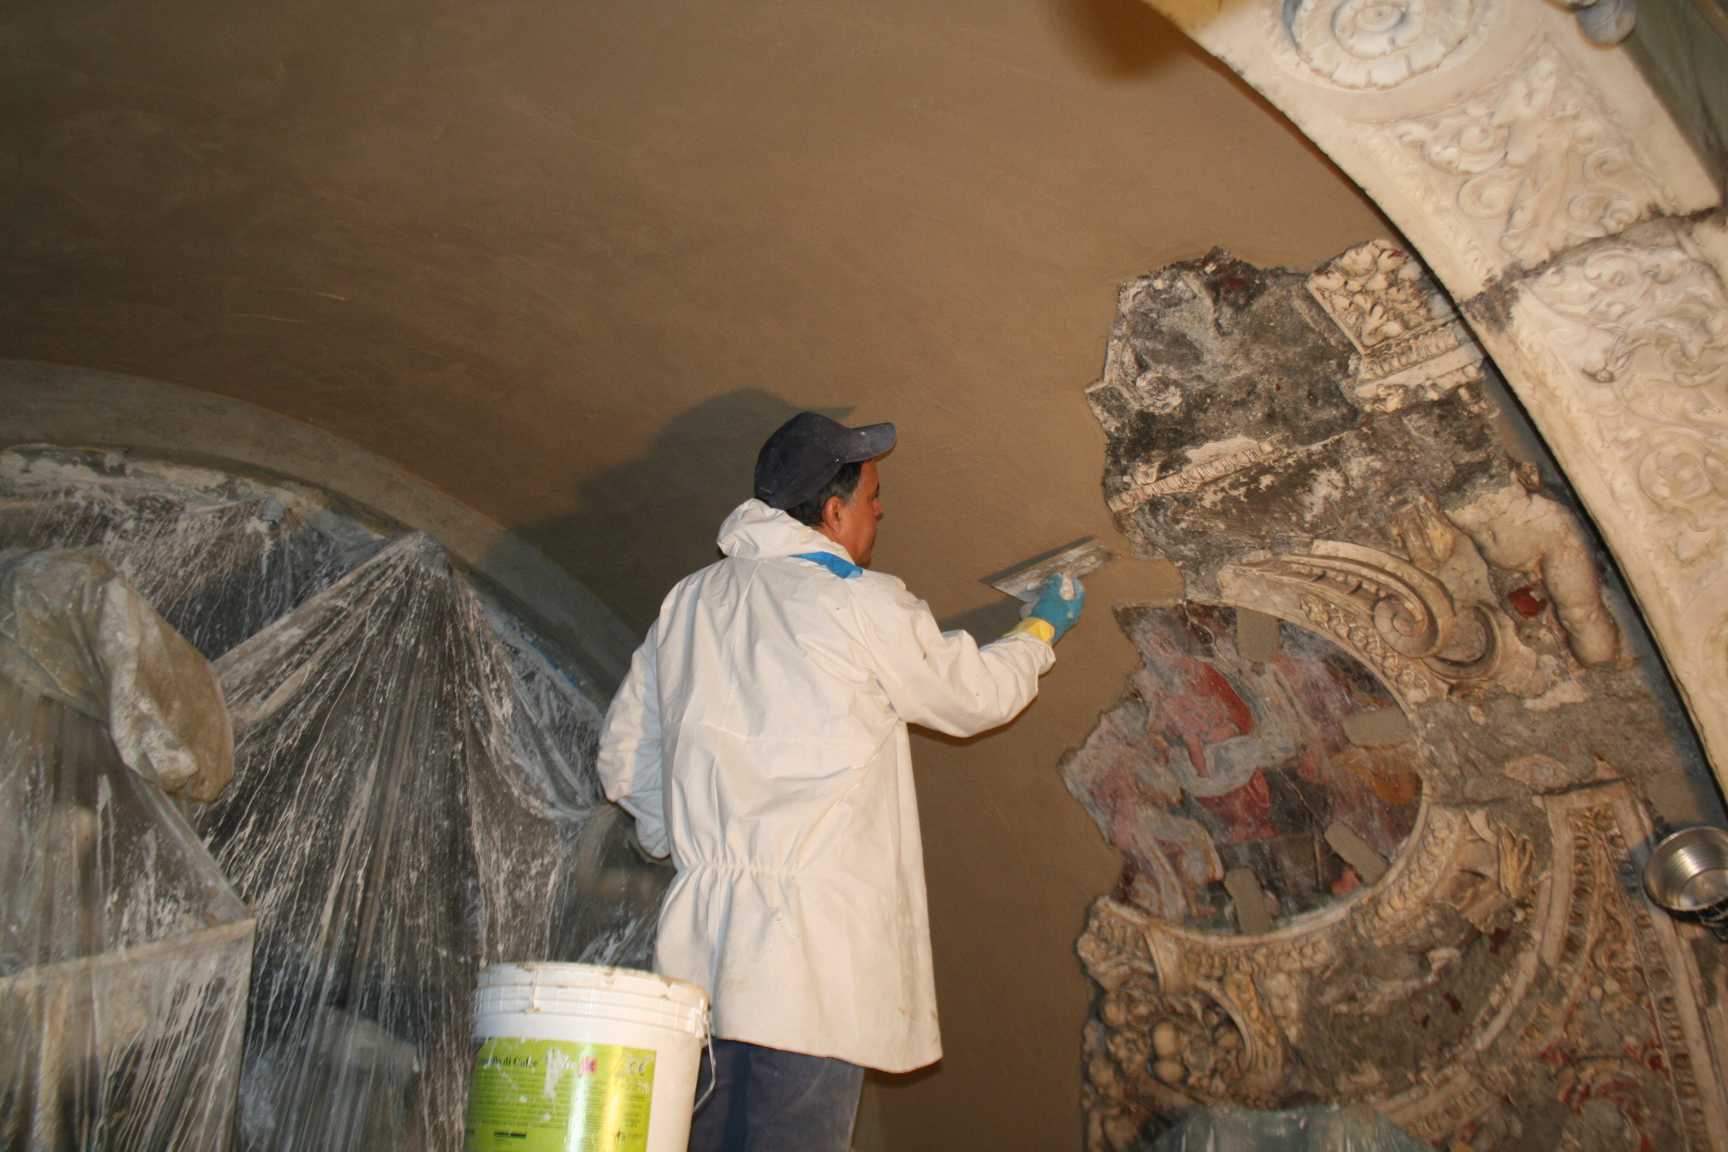 Il ciclo di dipinti murali all’interno dell’edificio è stato realizzato con una buona tecnica ad affresco, su intonachino di malta di calce e inerti misti, steso su arriccio e lisciato, con probabili parti pittoriche eseguite a secco.